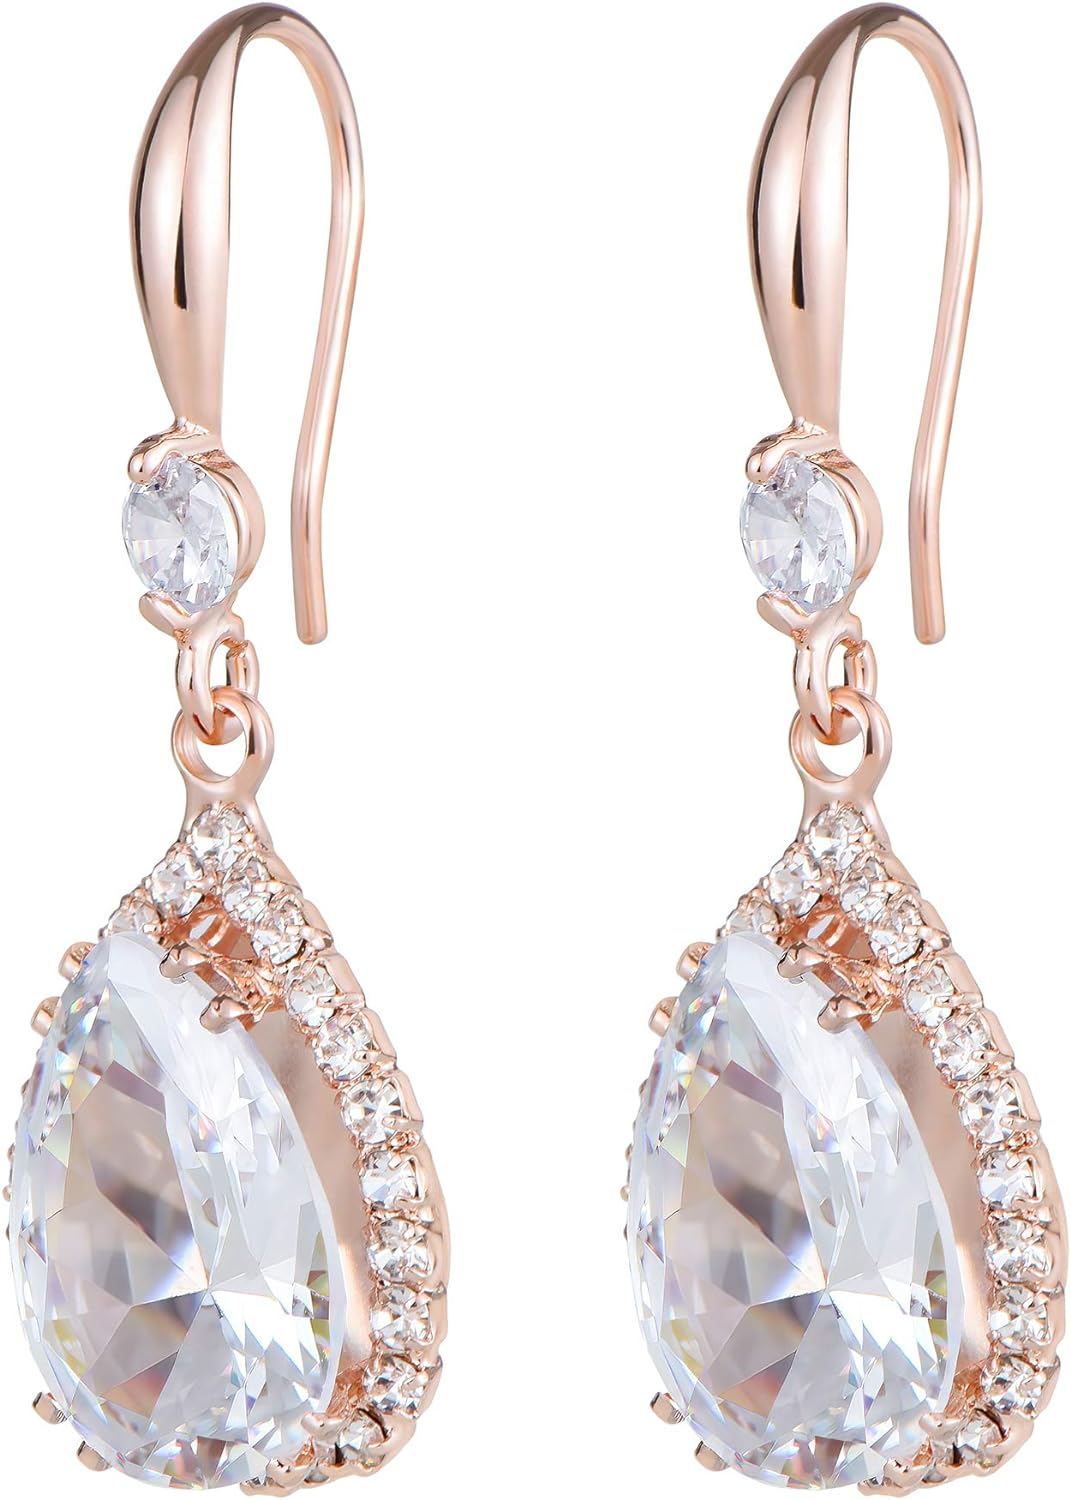 Linawe Diamond Dangle Earrings for Women Trendy, Rhinestone Drop Chandelier Earrings, Teardrop Crystal Cubic Zirconia Wedding Jewelry Set, 14K Gold/Rose Gold/Silver Tone